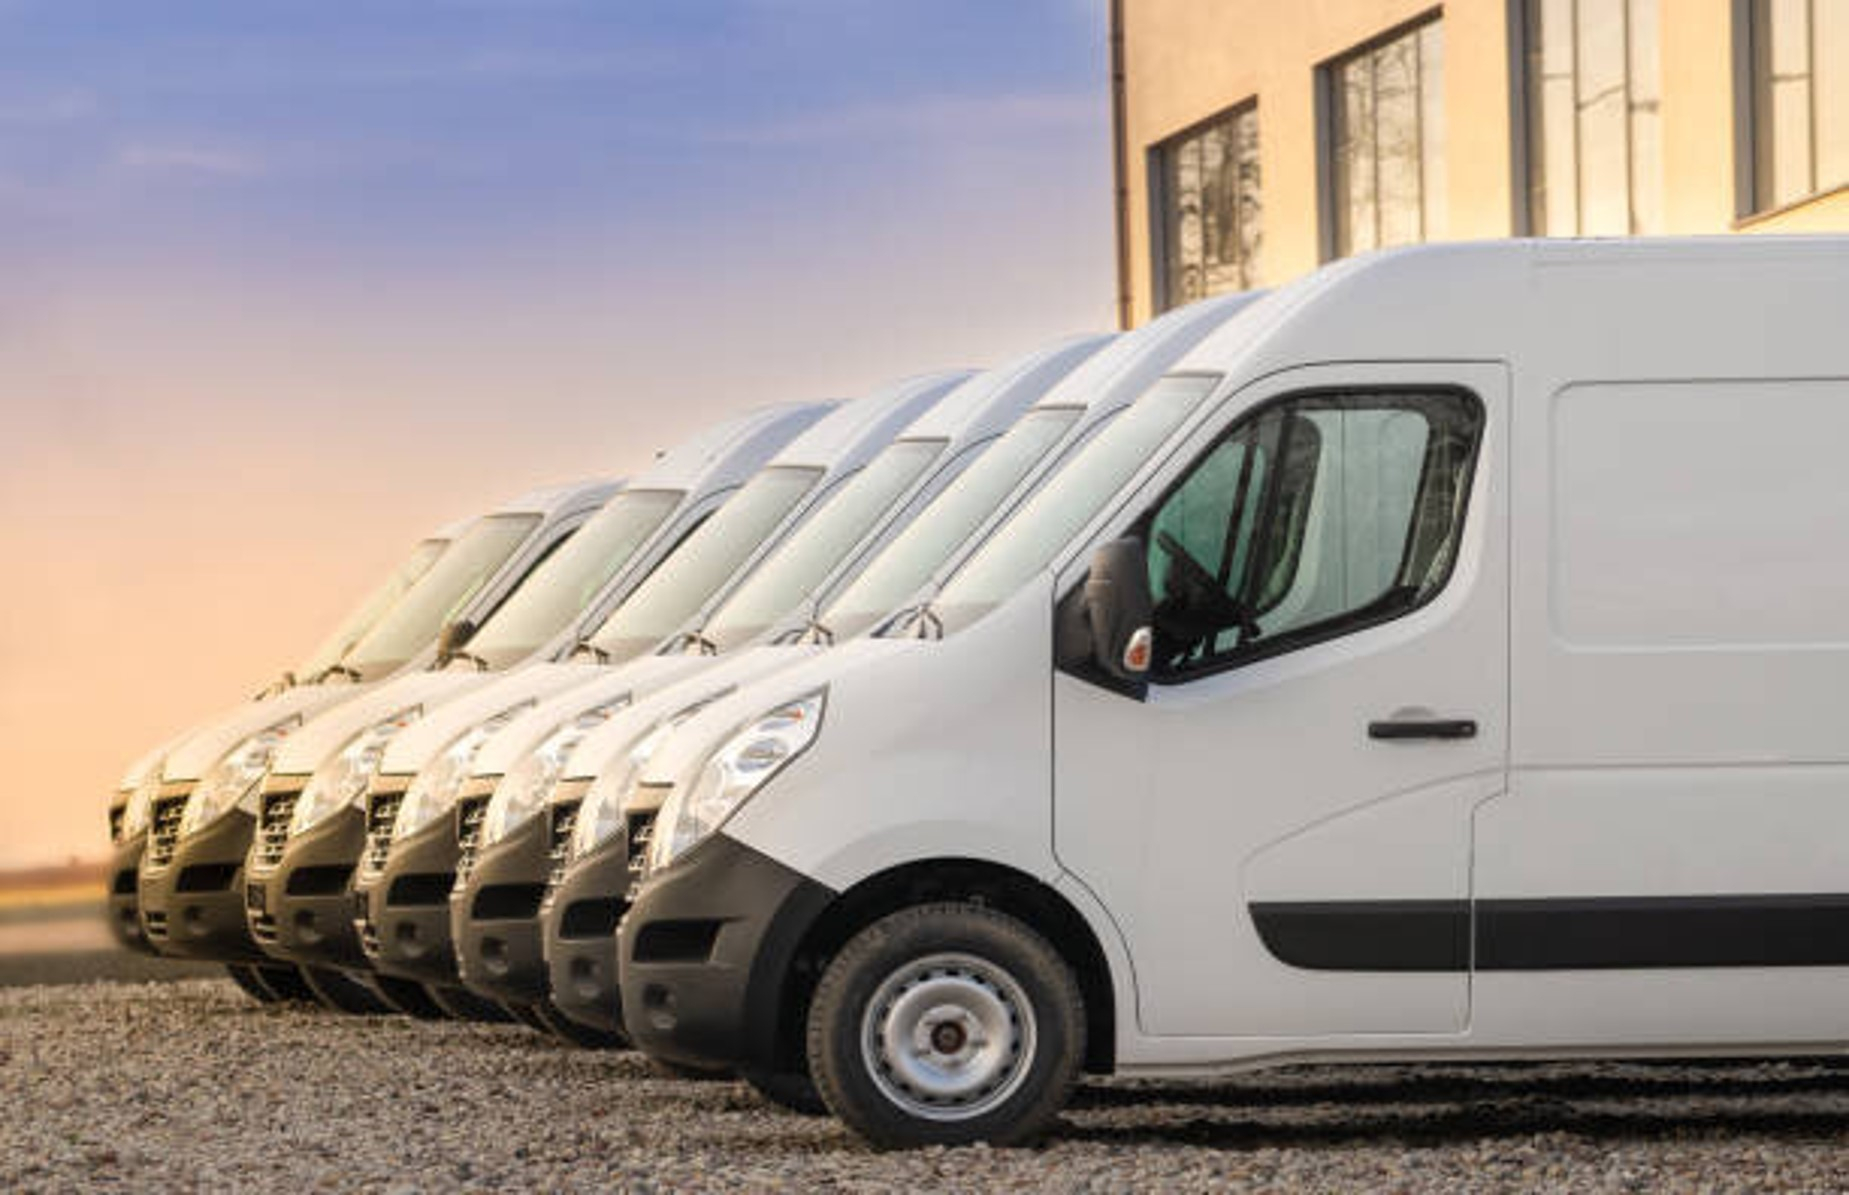 Fleet of electric delivery vans